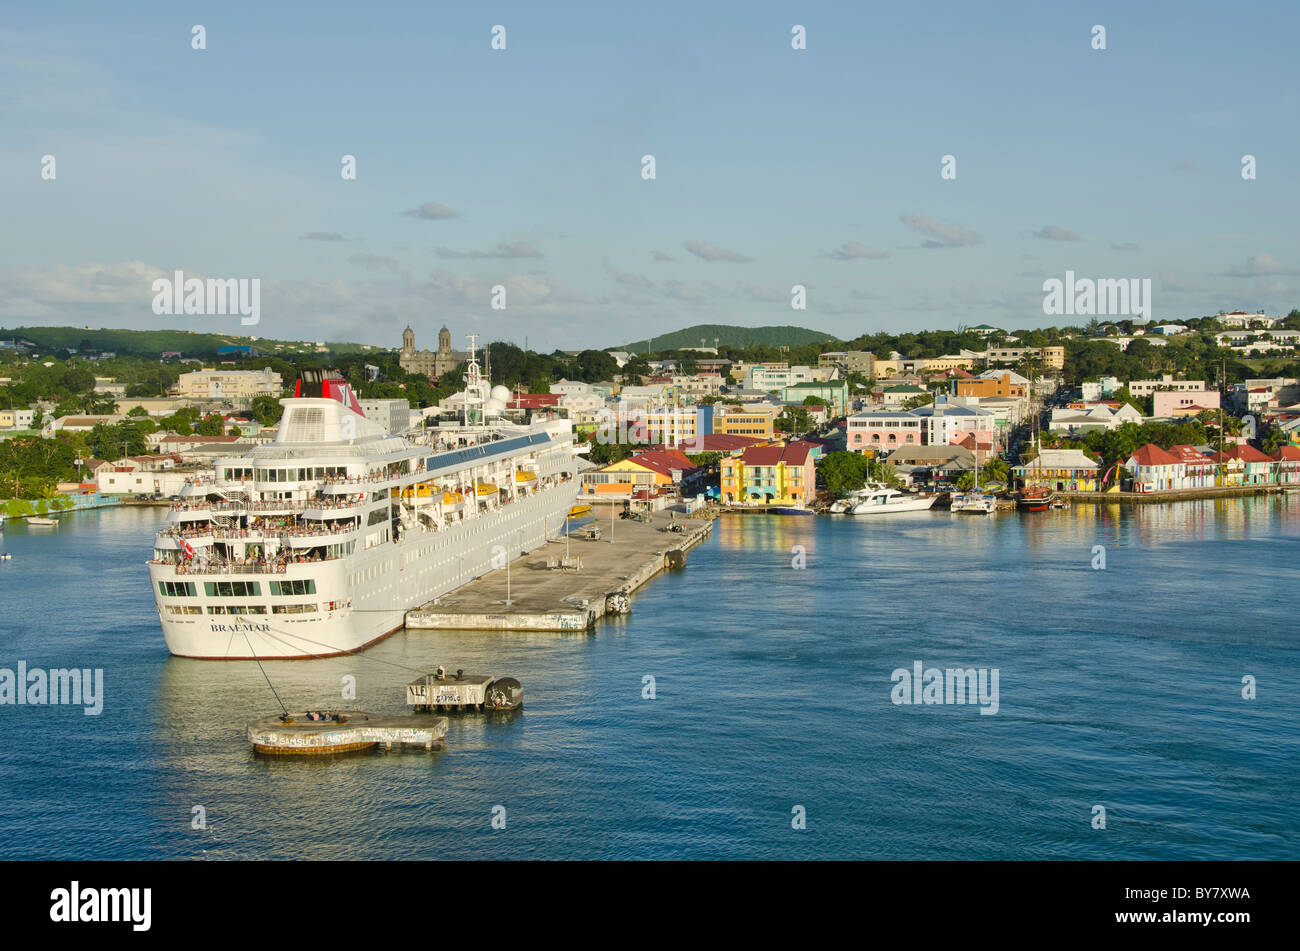 Saint John's Antigua Caribbean Cruise Port dock ci-dessus avec navire amarré et la ville de couleurs vives Banque D'Images